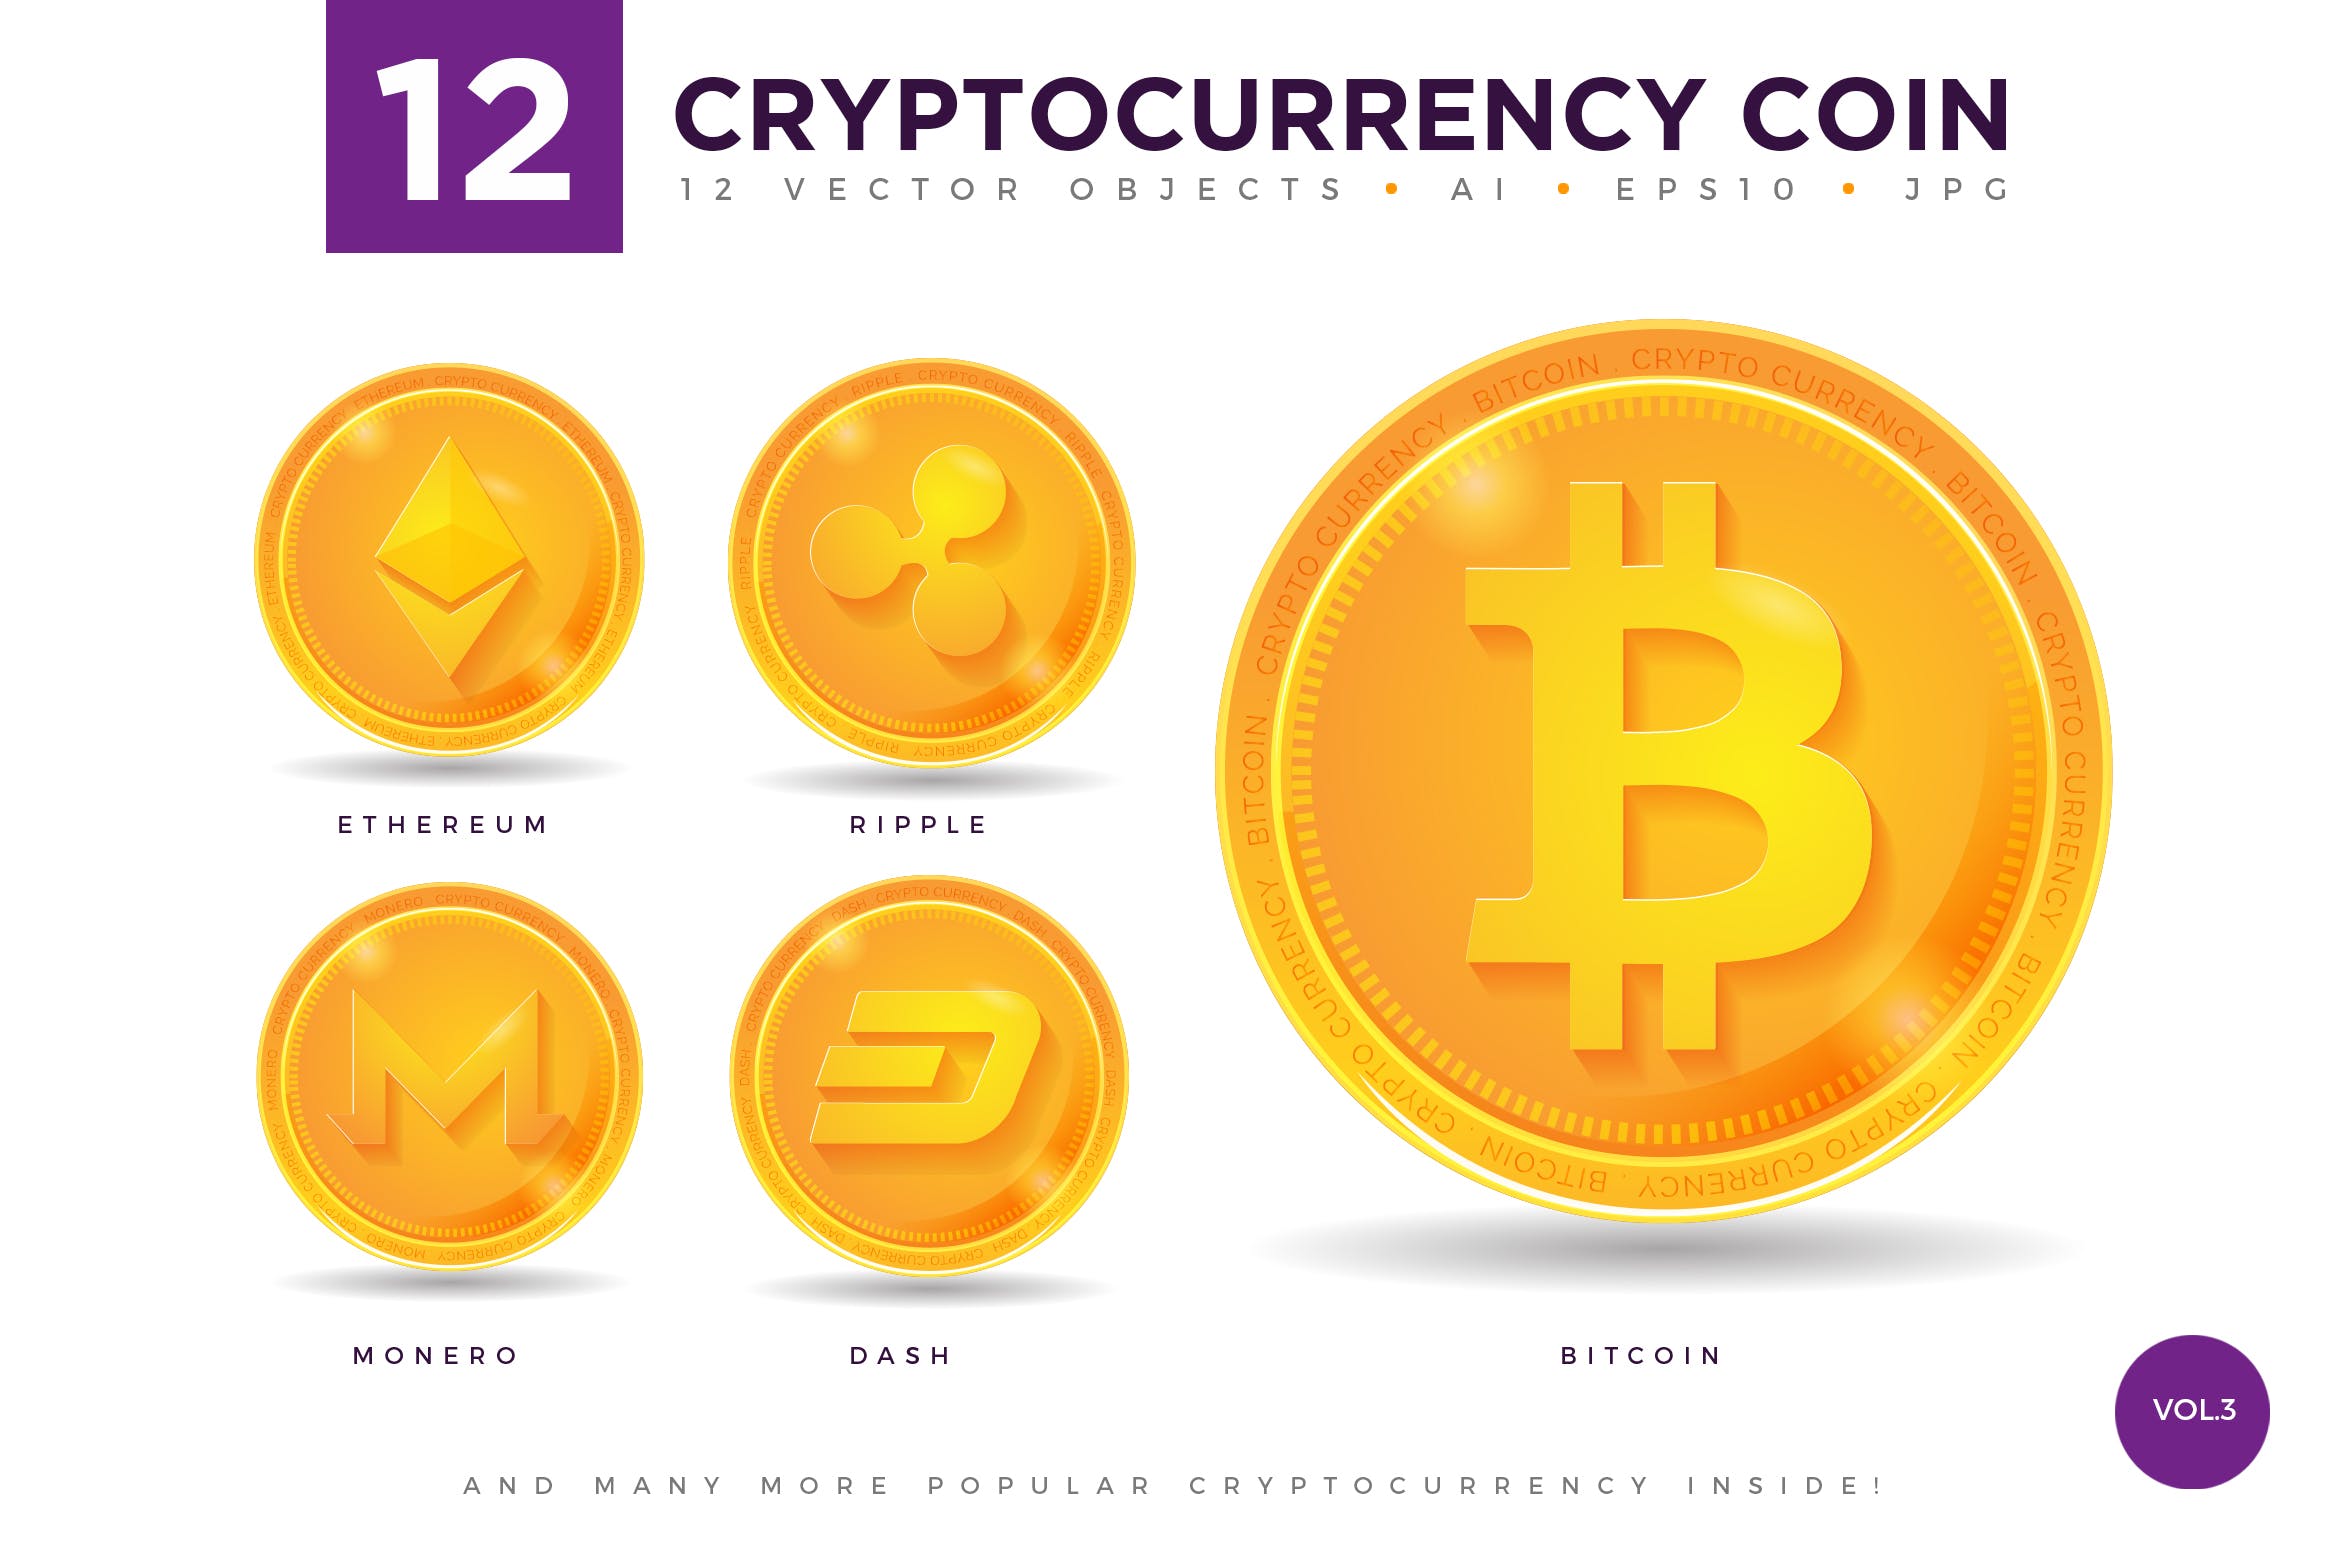 12枚加密货币主题硬币形状矢量非凡图库精选图标合集v3 12 Crypto Currency Coin Vector Illustration Set 3插图